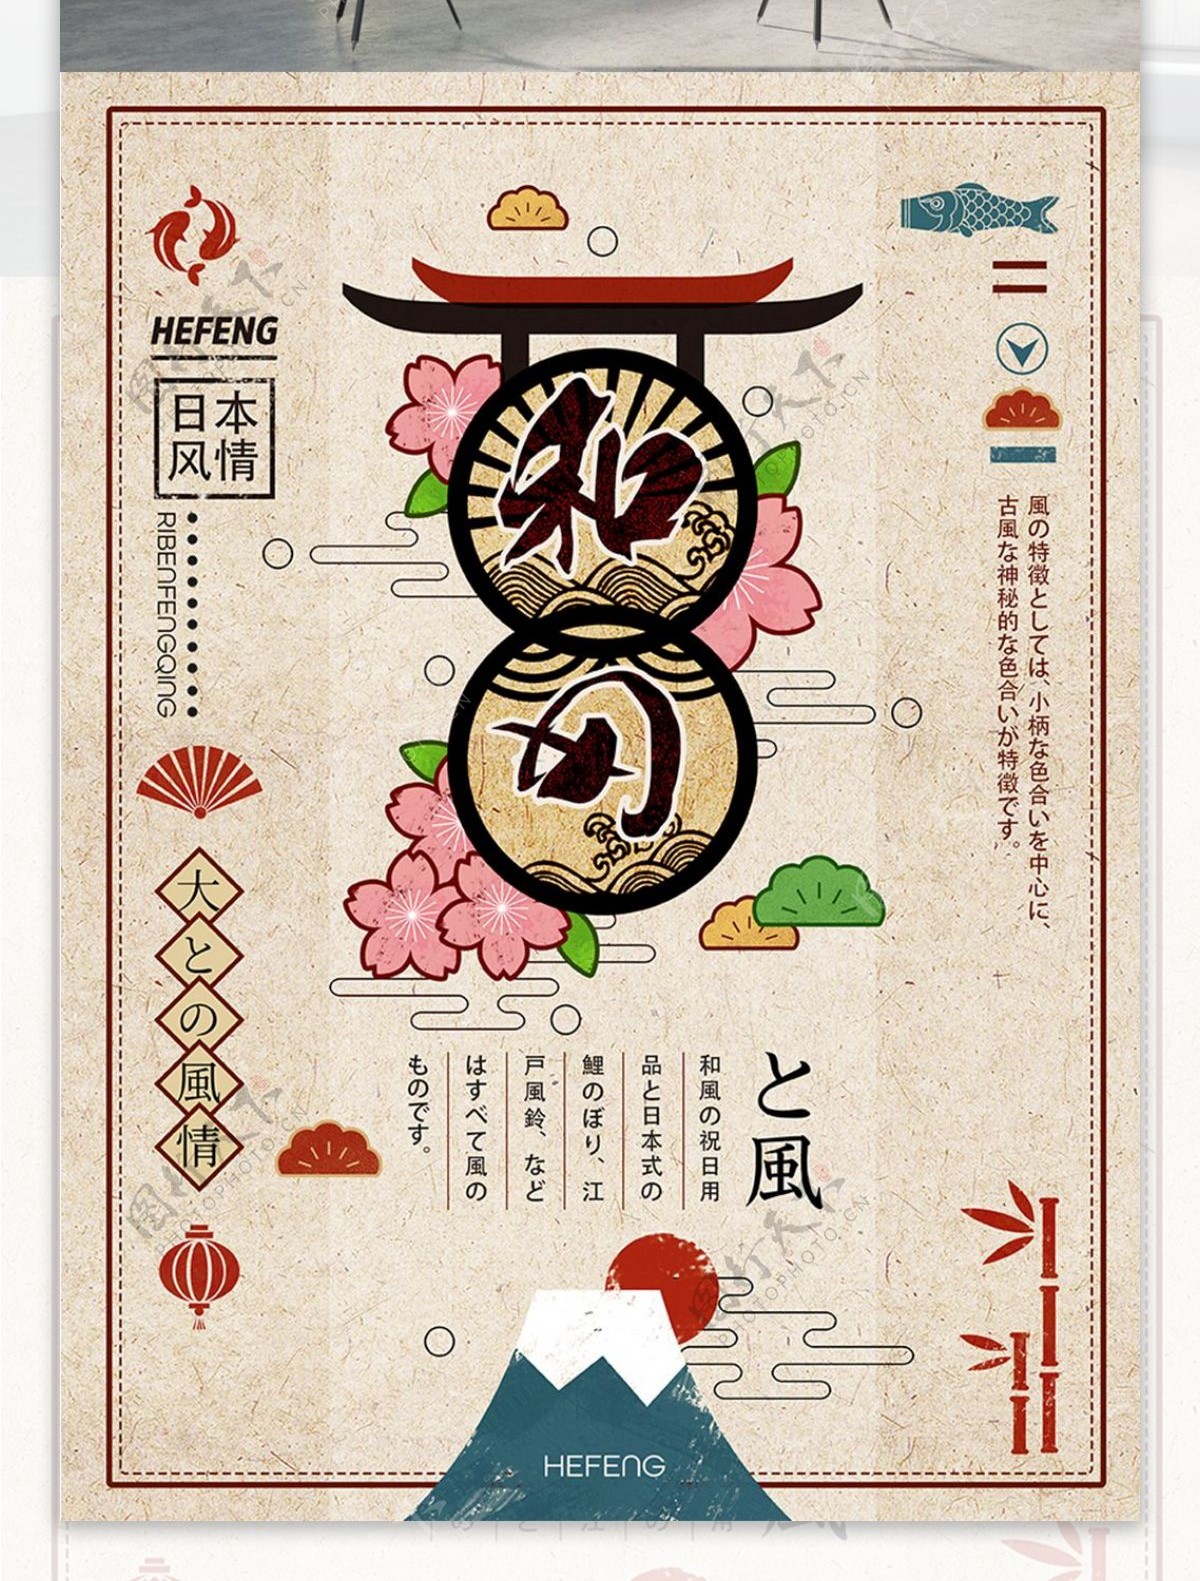 日本文化和风日式清新手绘插画海报